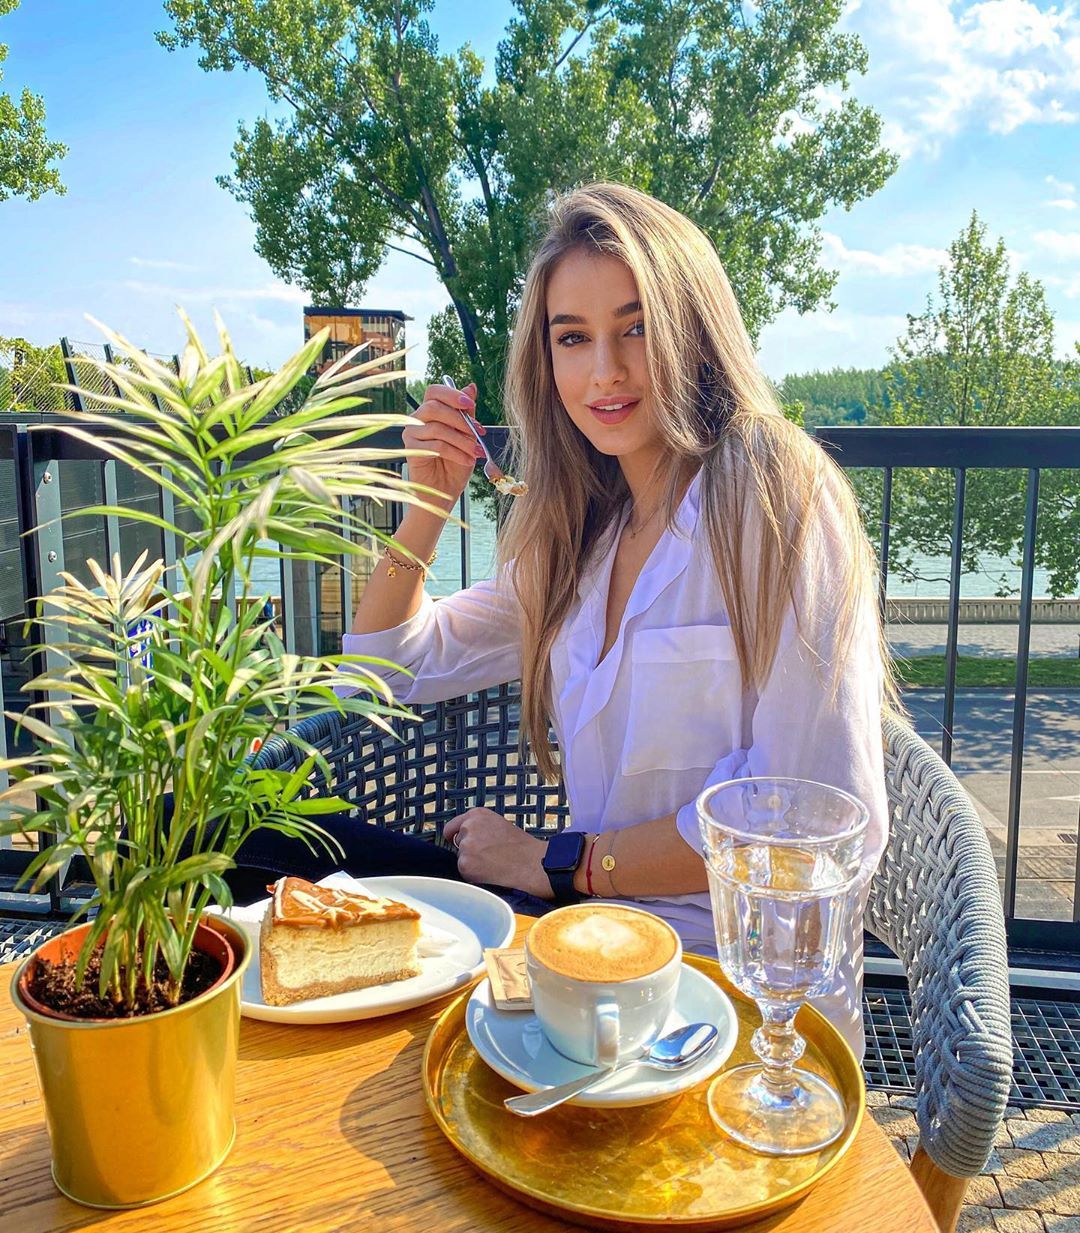 Miss Slovensko Leona Novoberdaliu: Nie všetky missky sú hlúpe. Inteligentná žena nemá dôvod hanbiť sa za svoj výzor (Rozhovor)